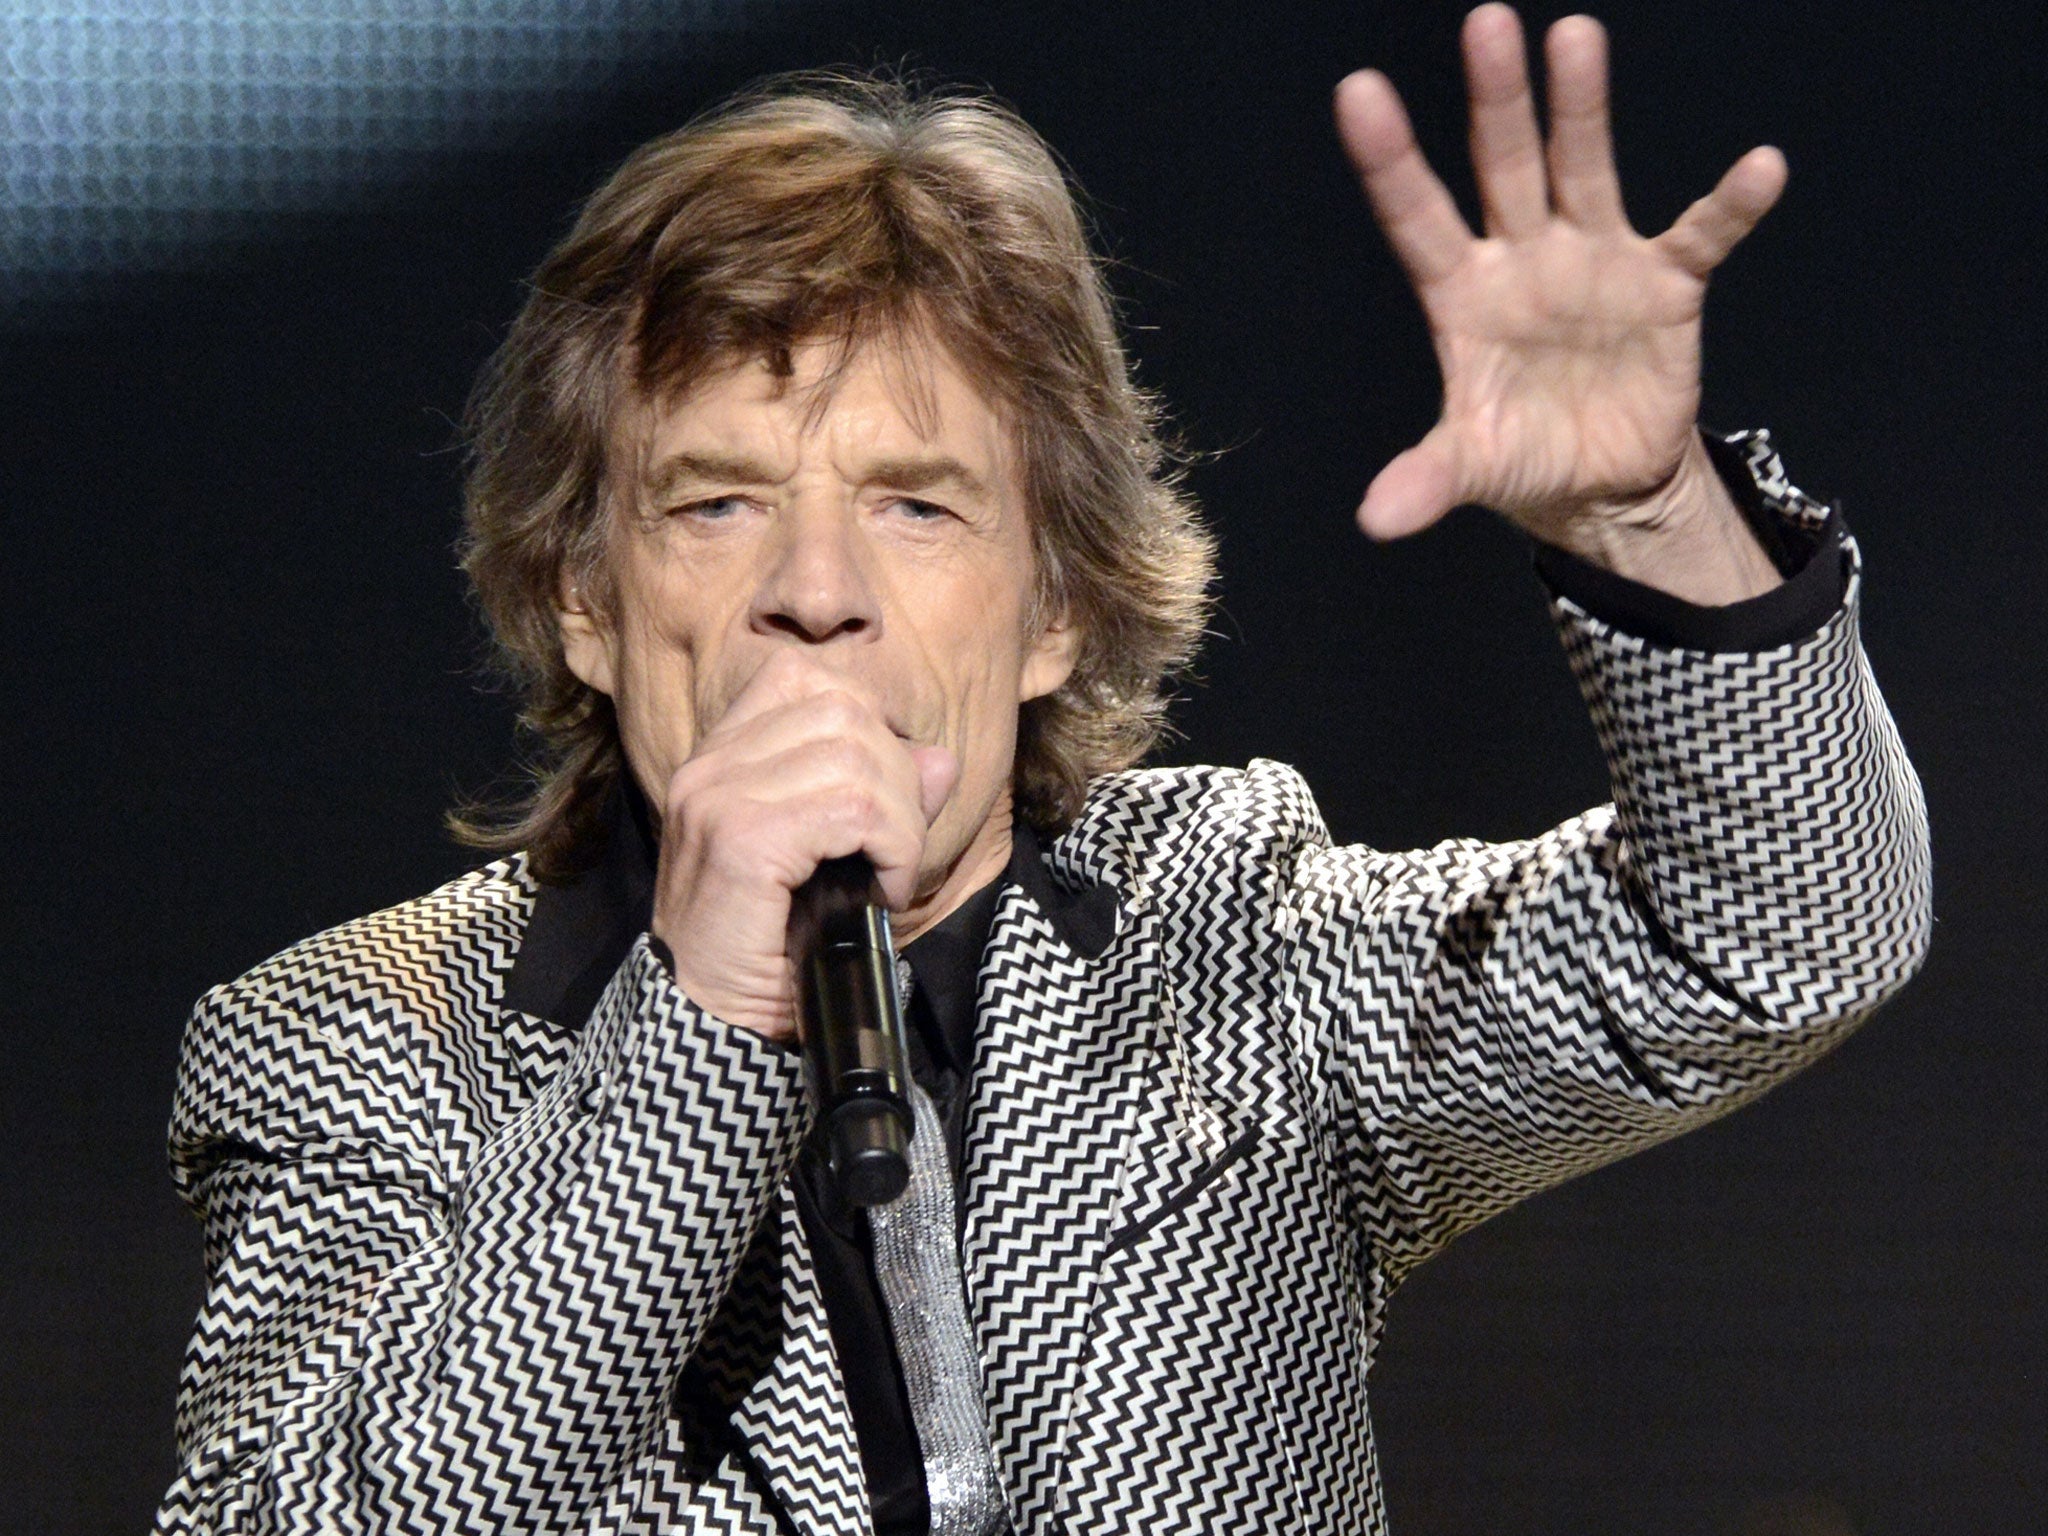 Mick Jagger, musician - 1962-